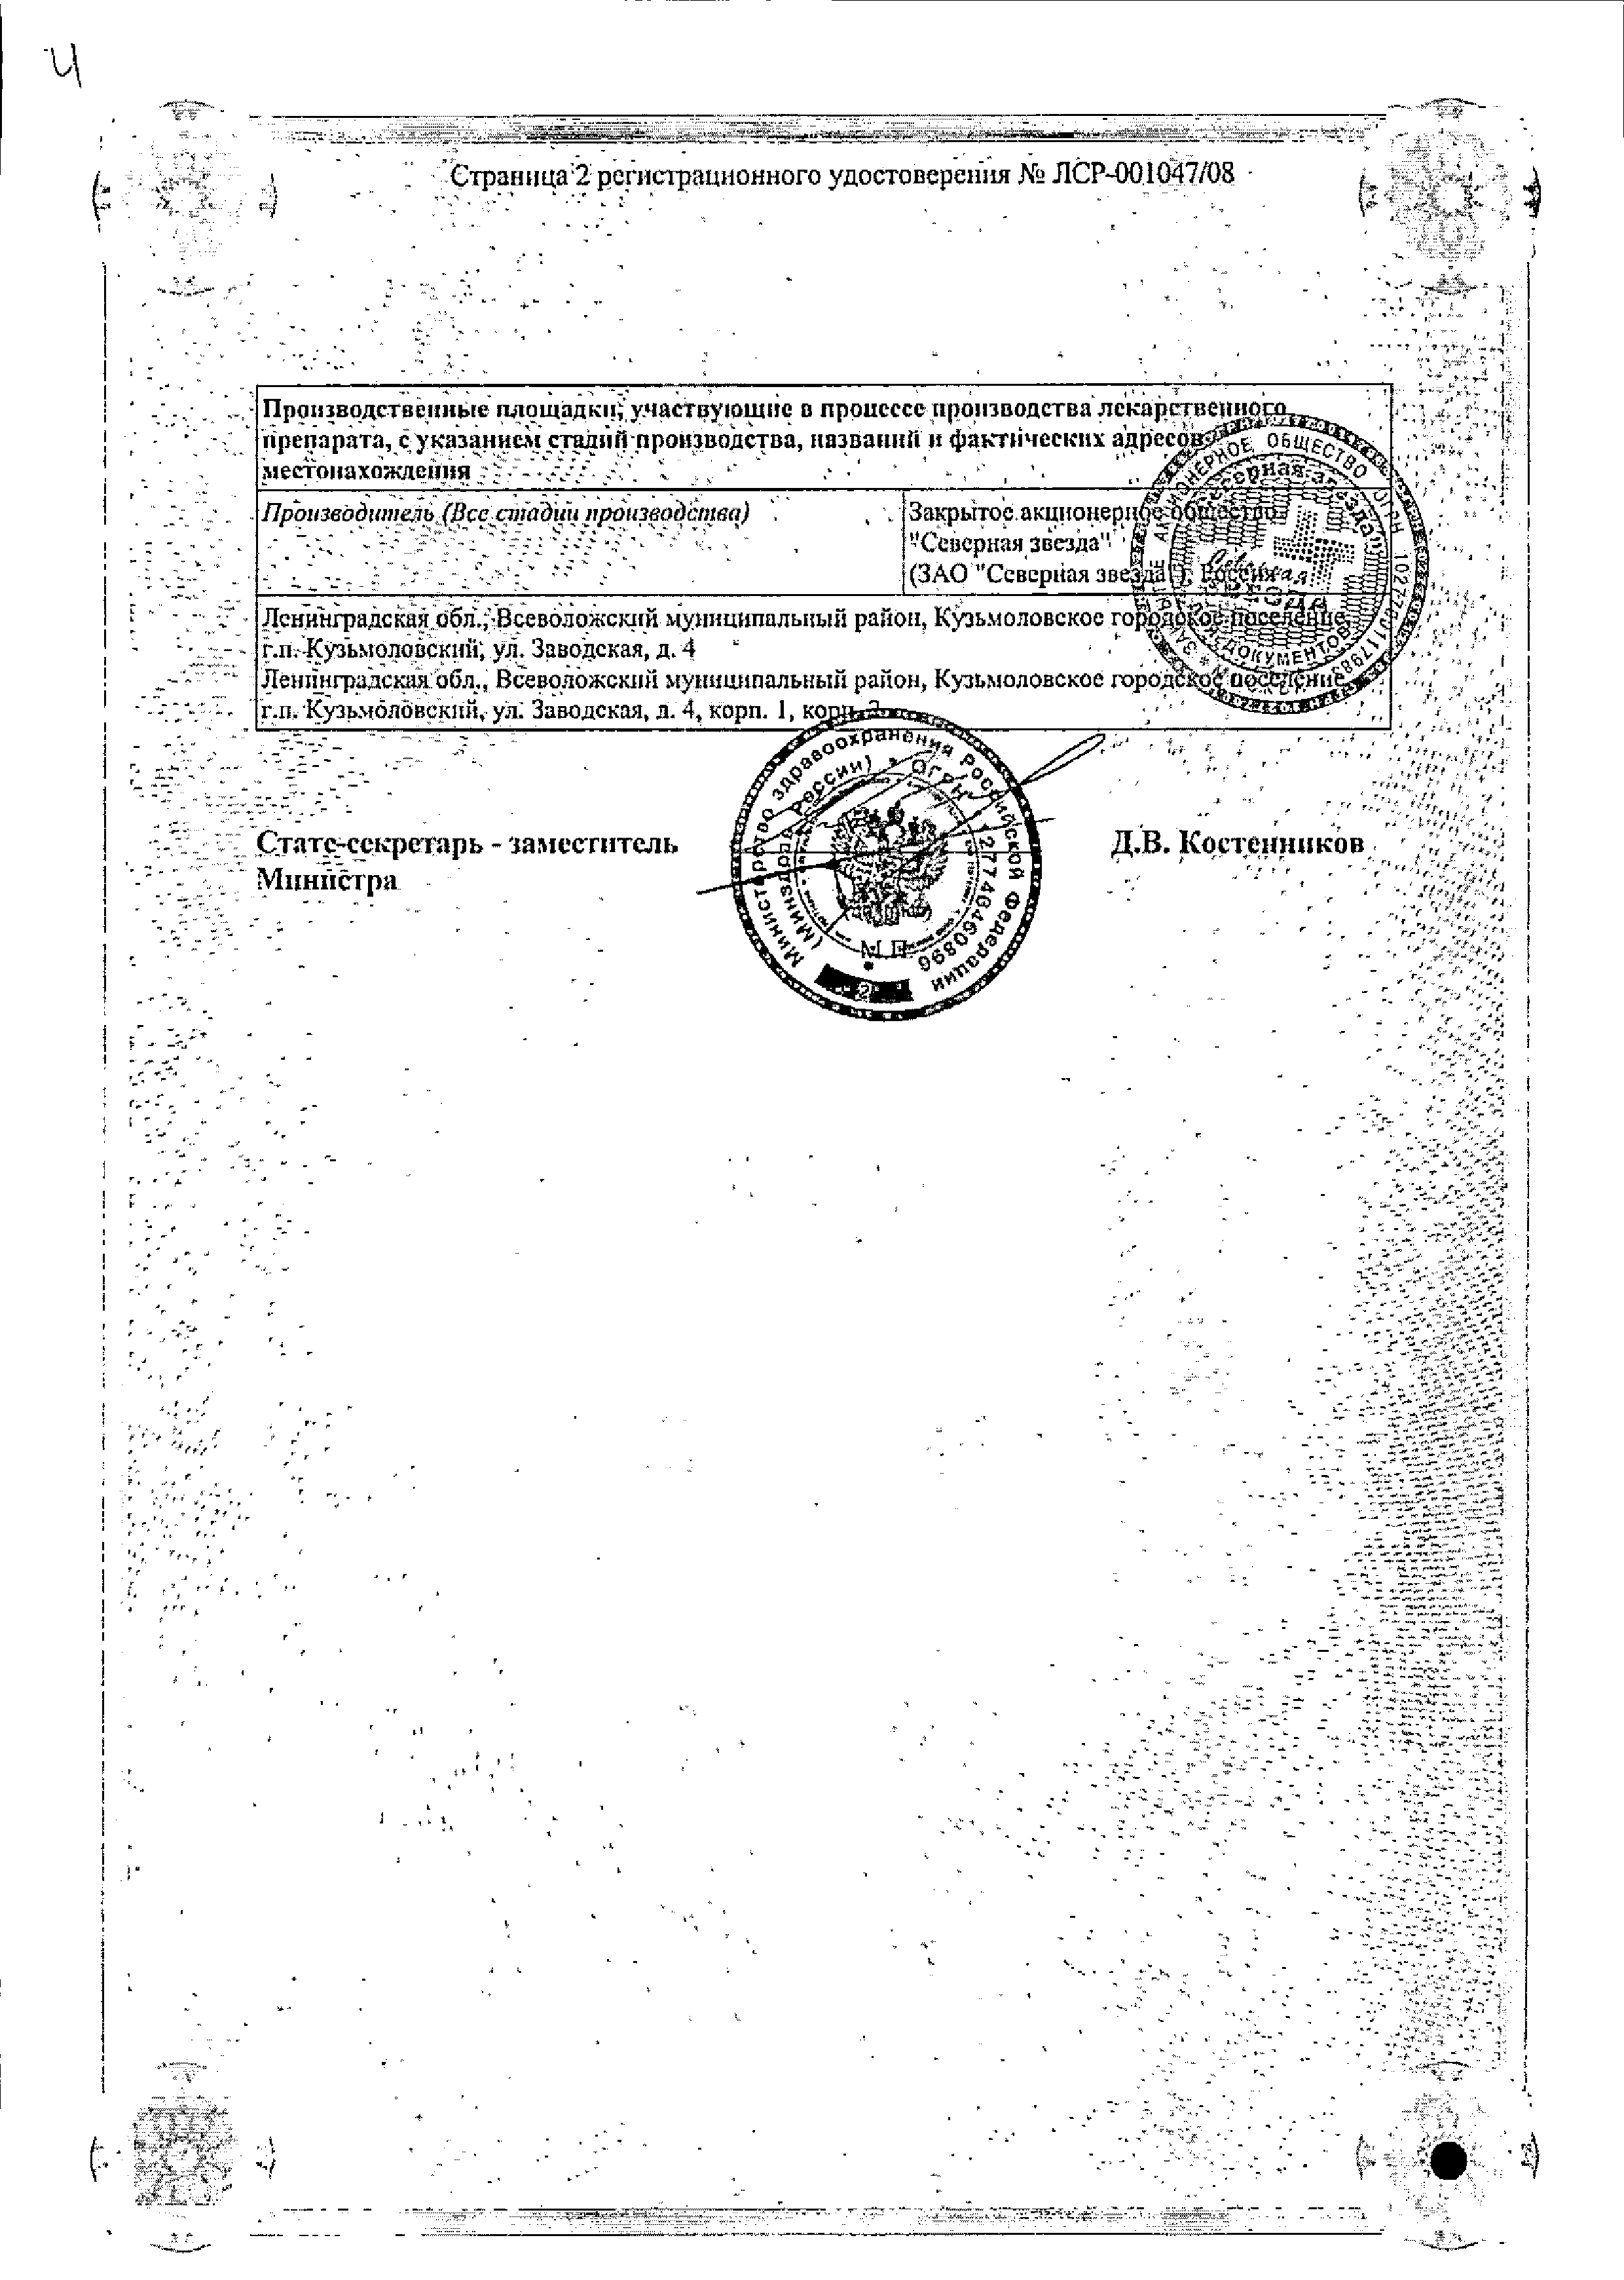 Бетагистин-СЗ сертификат